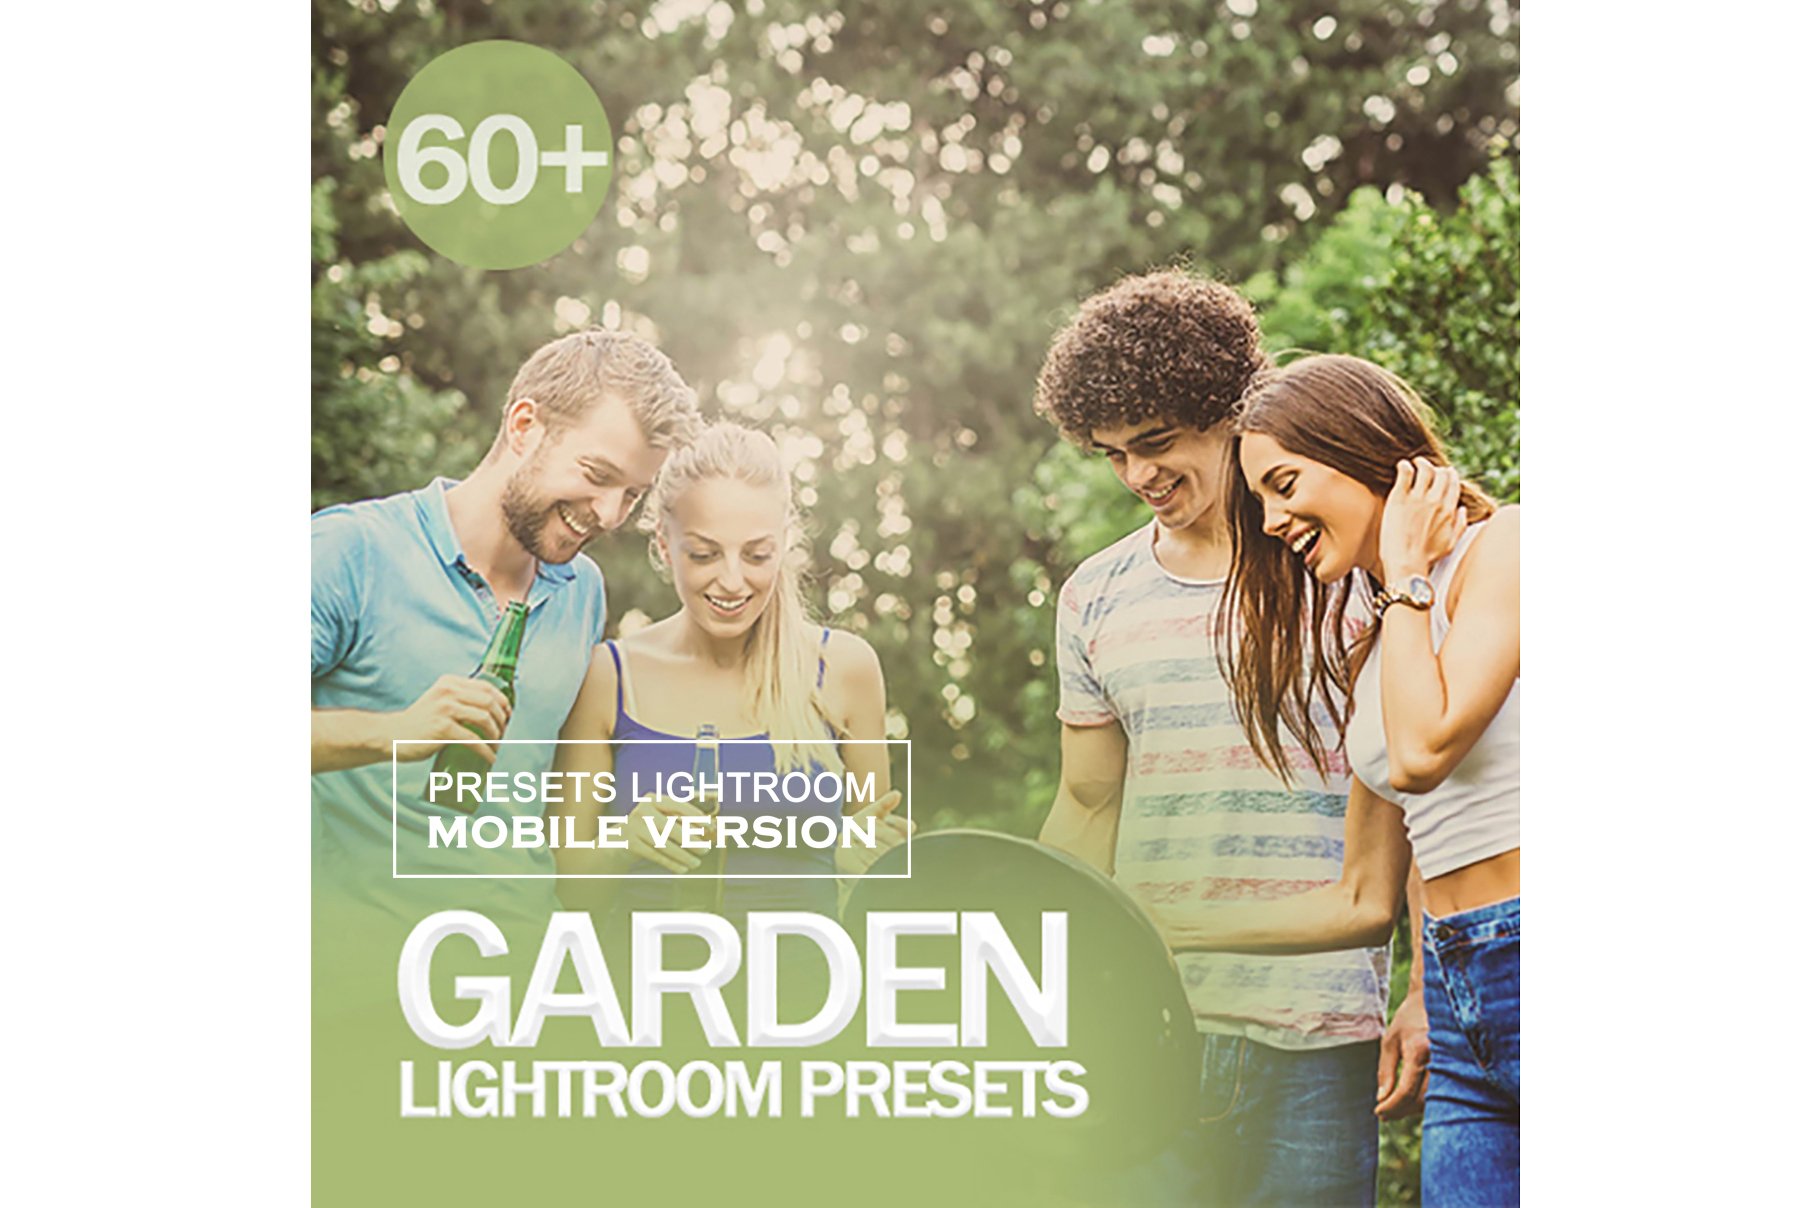 Garden Lightroom Mobile Presetscover image.